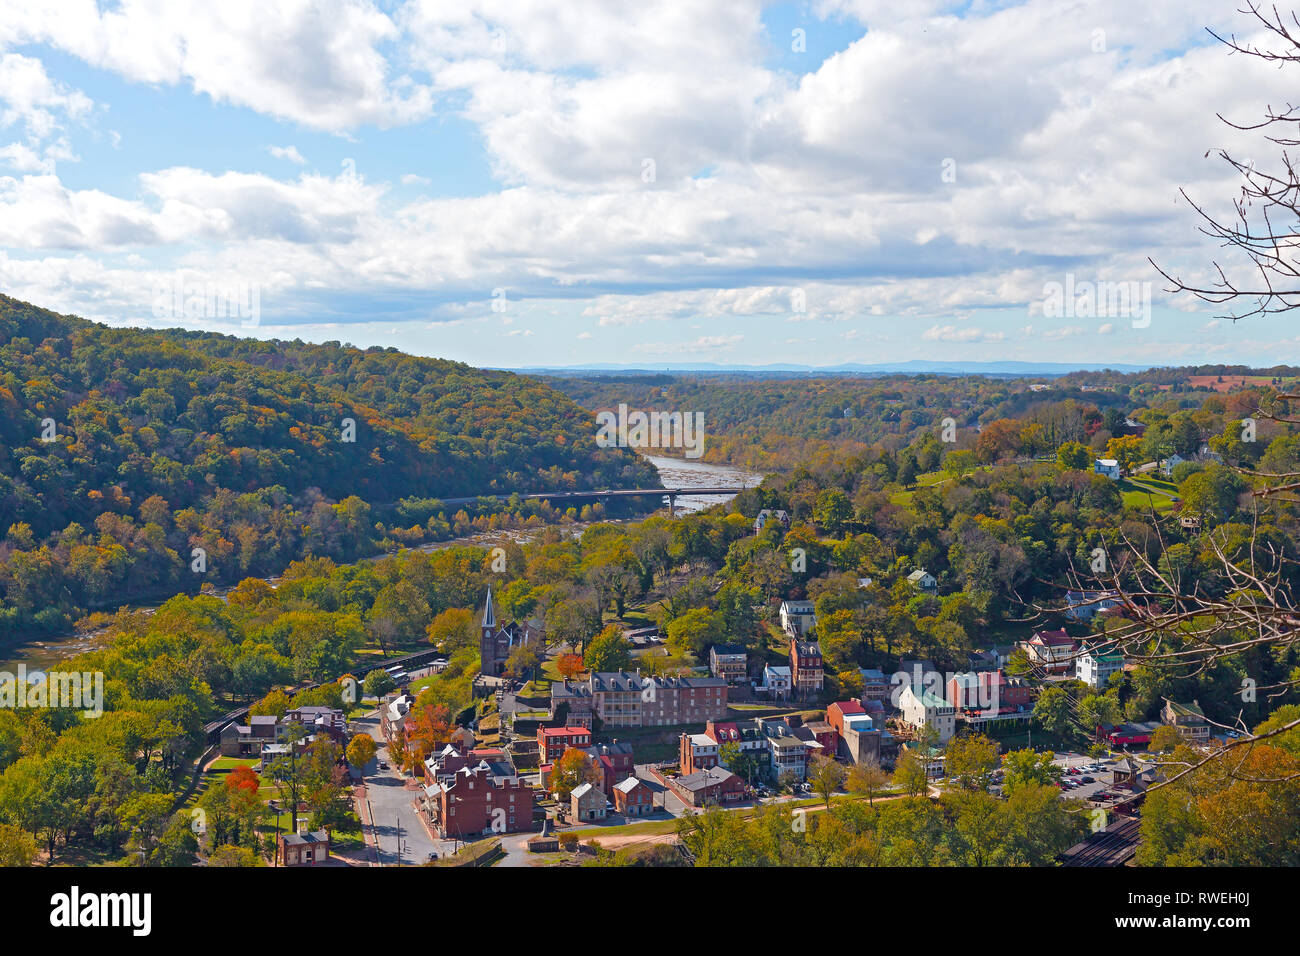 Una vista de Harpers Ferry ciudad histórica desde un punto alto. Paisaje de West Virginia en otoño con el Parque Histórico Nacional Harpers Ferry en el punto rcest Foto de stock